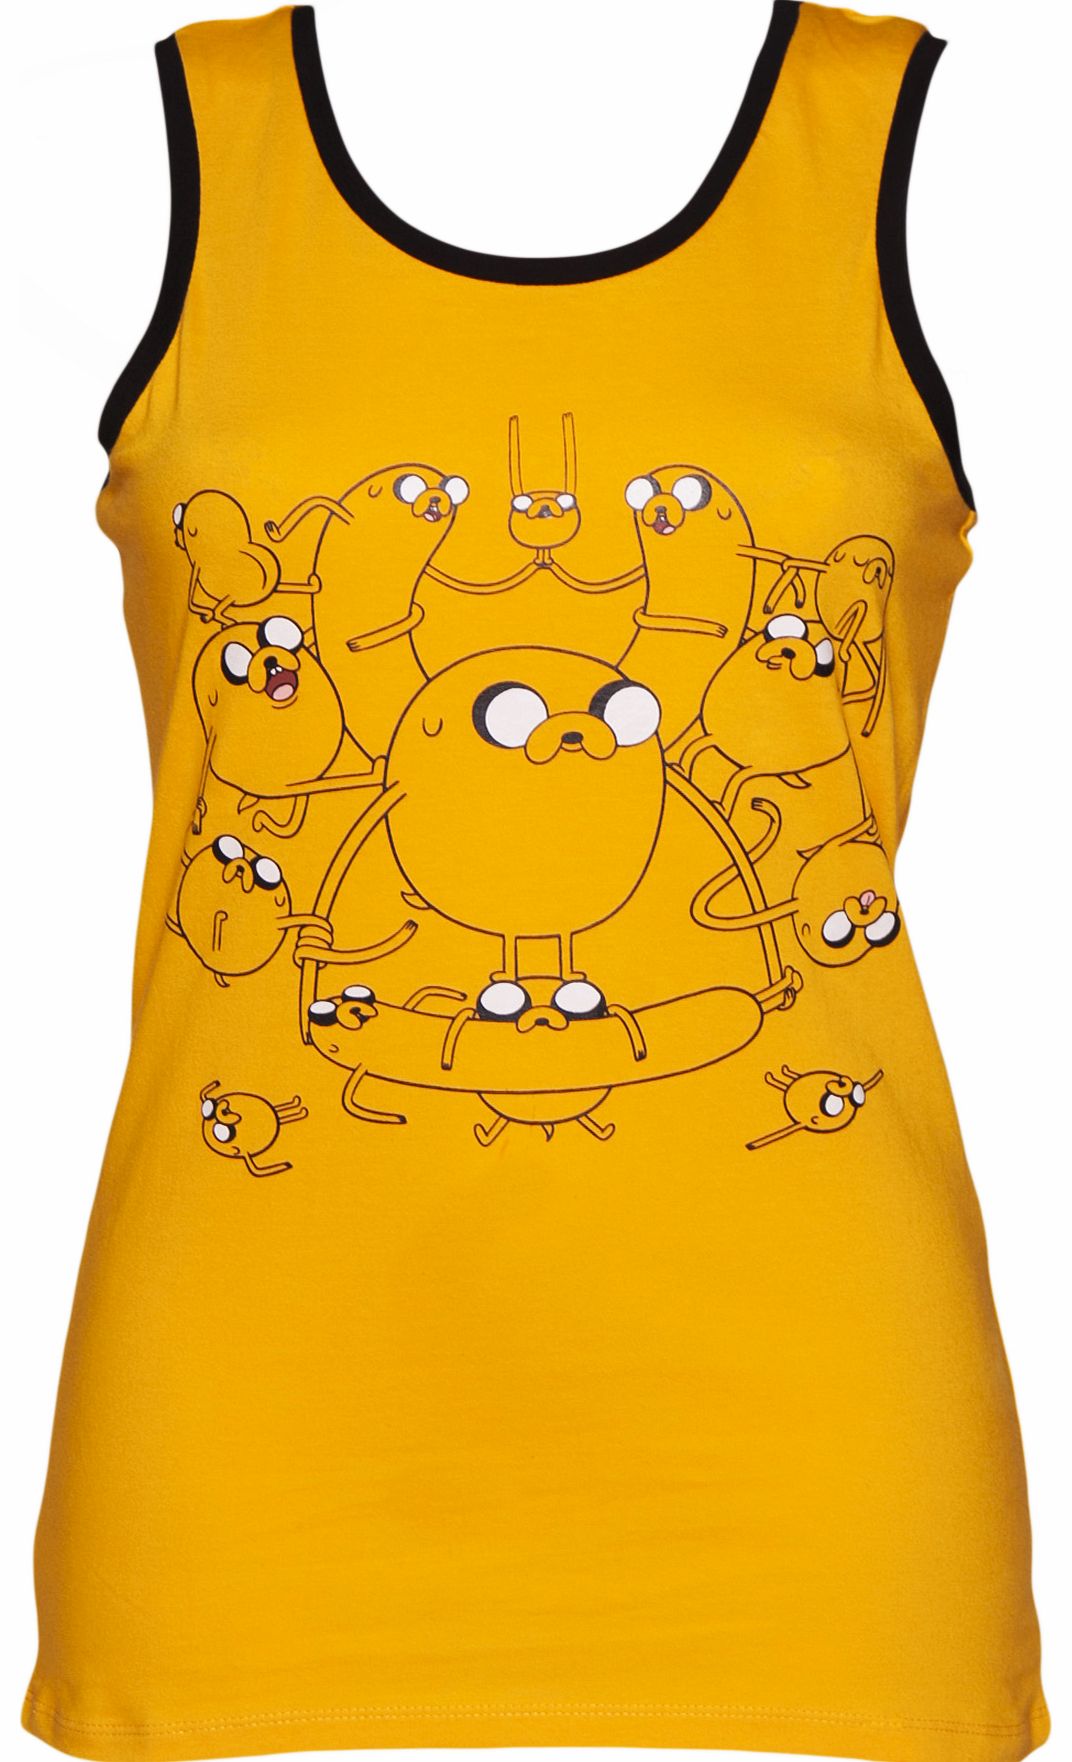 Ladies Yellow Adventure Time Vest